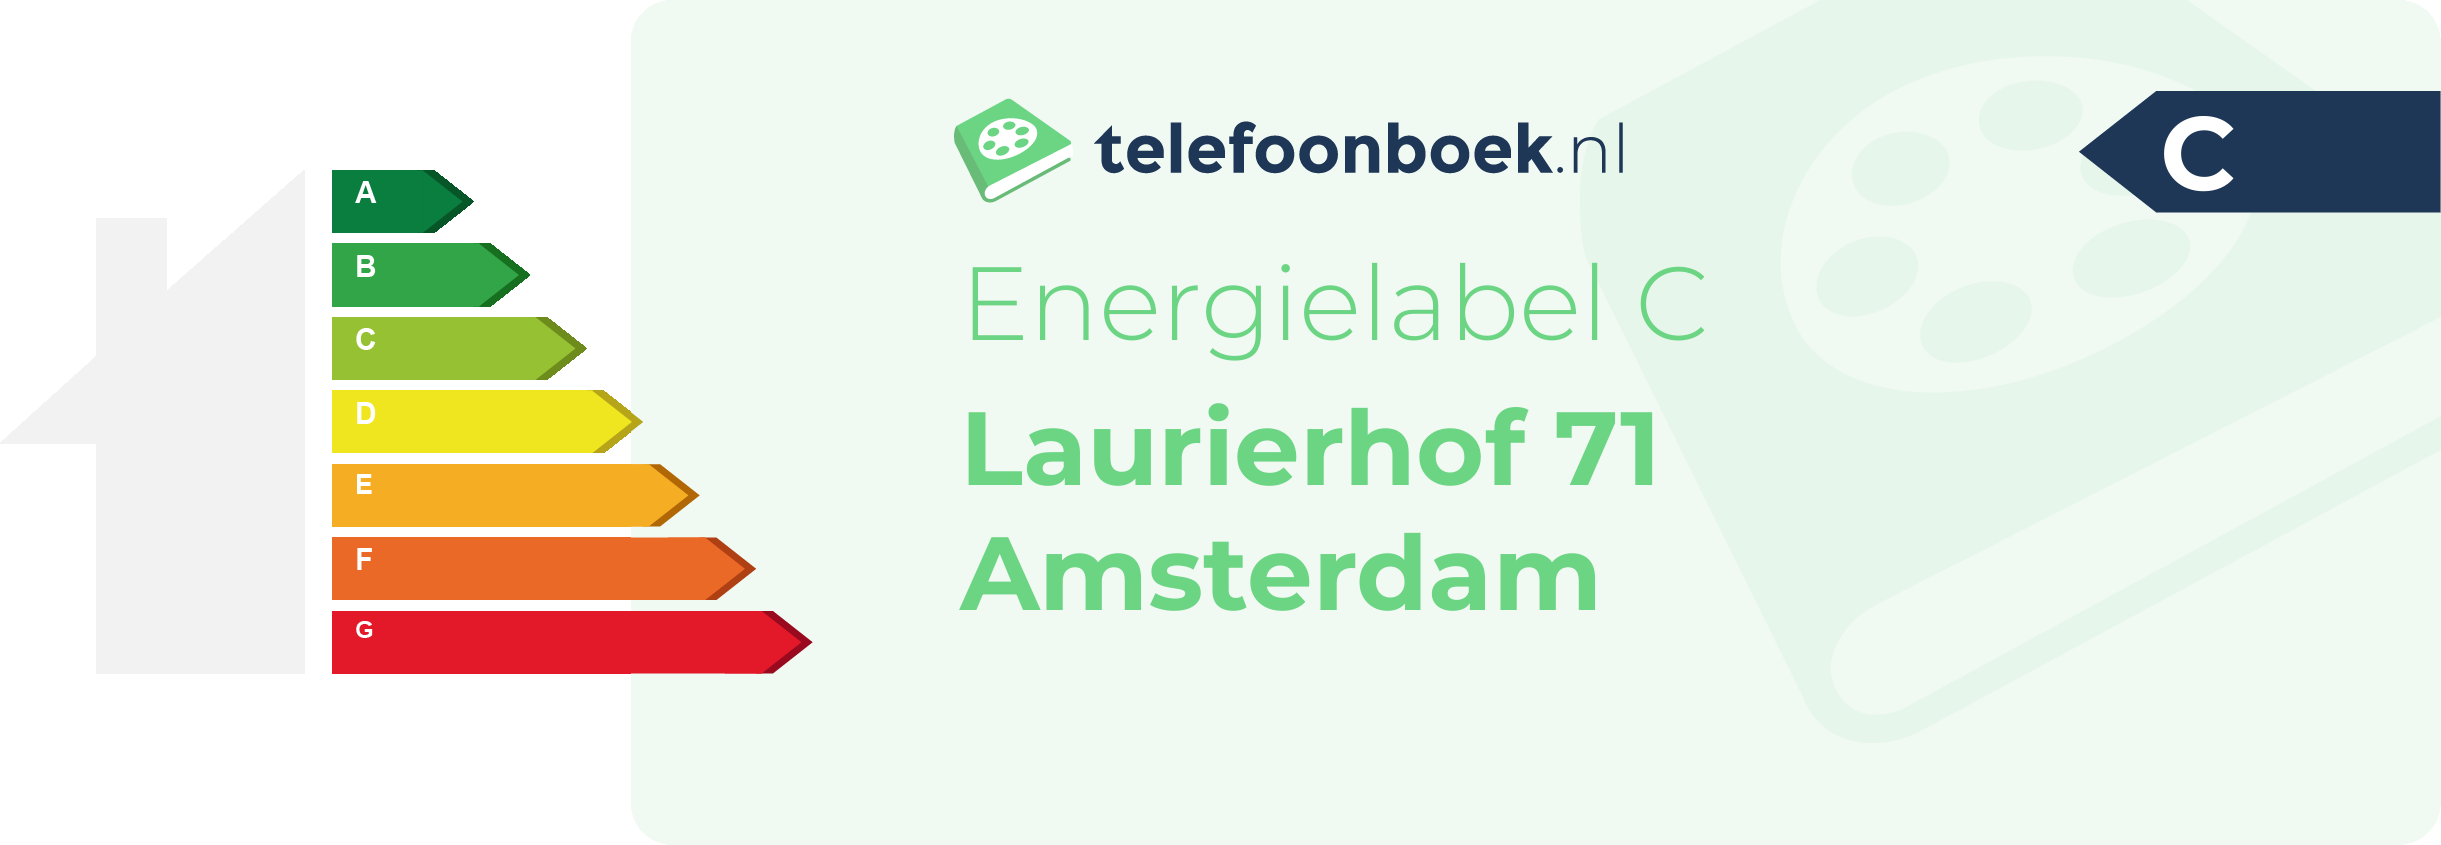 Energielabel Laurierhof 71 Amsterdam